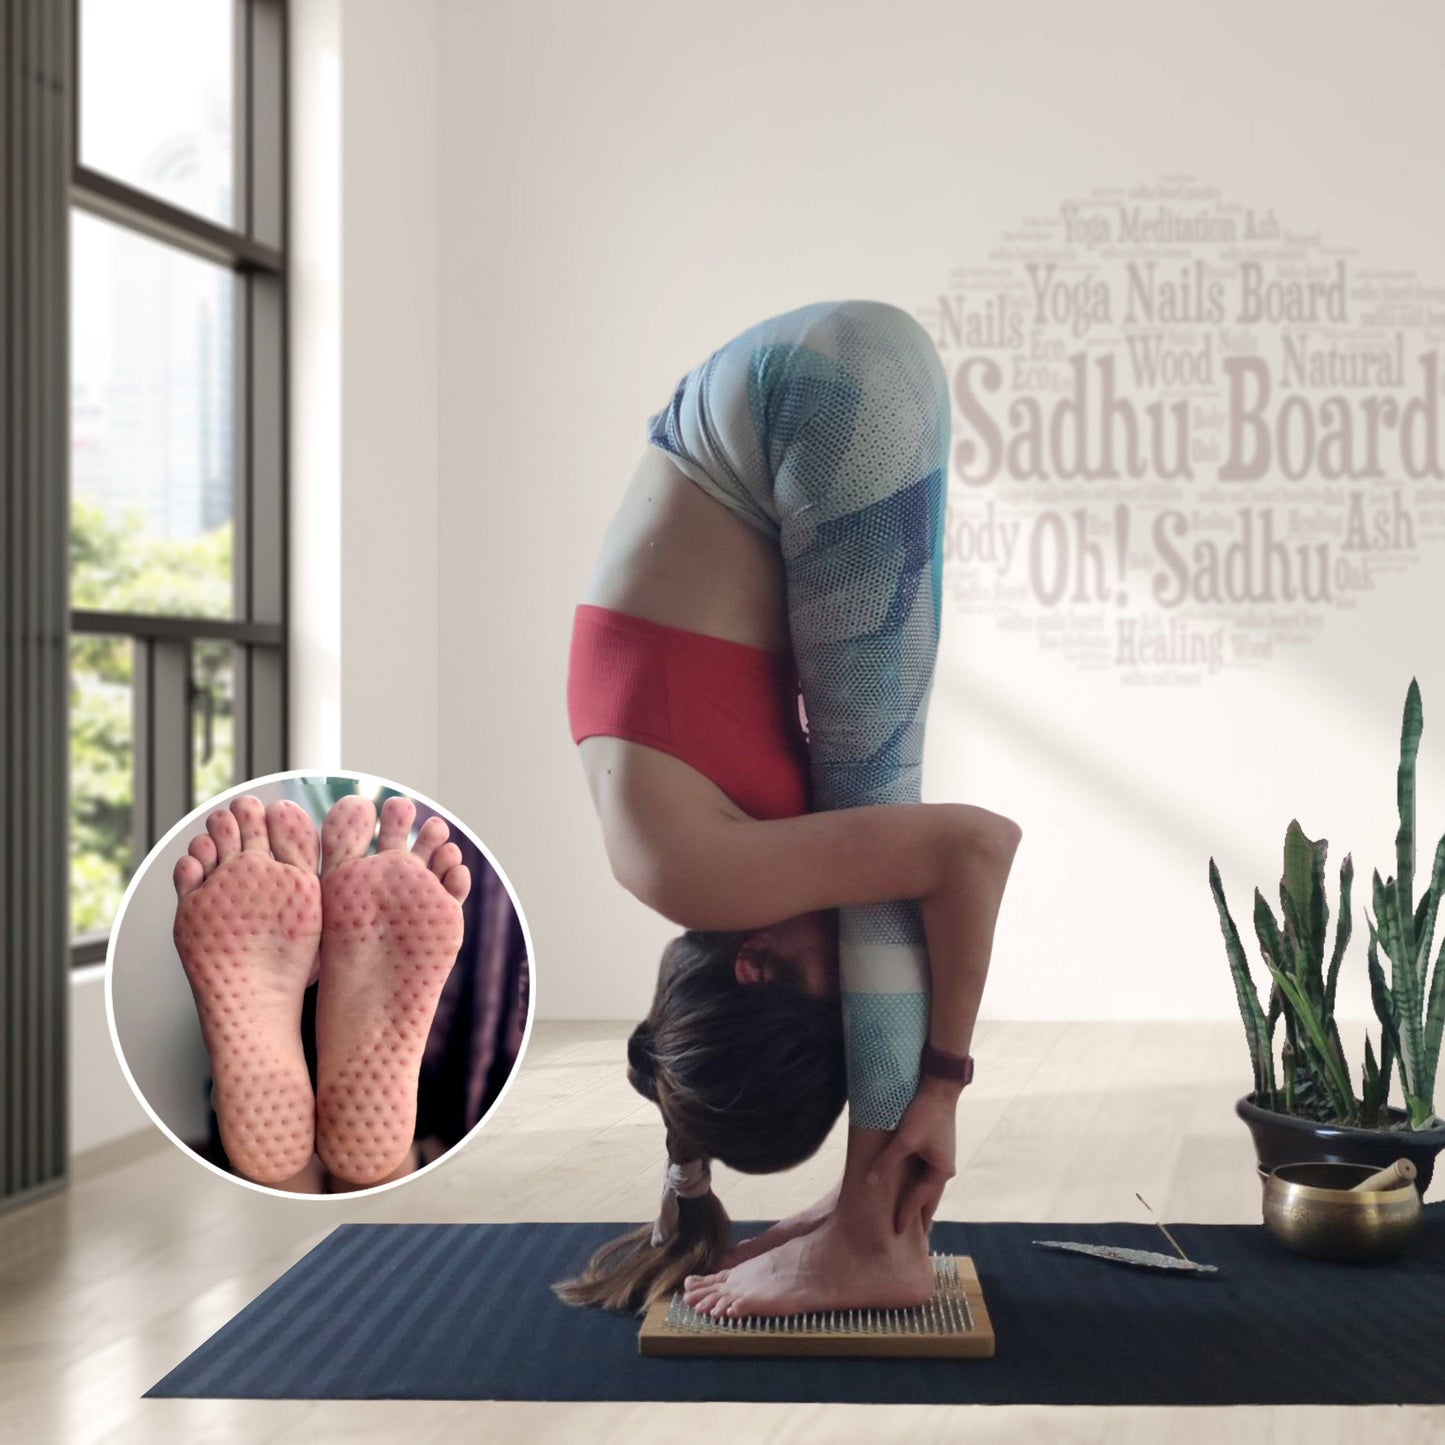 yoga girl standing on sadhu board nails